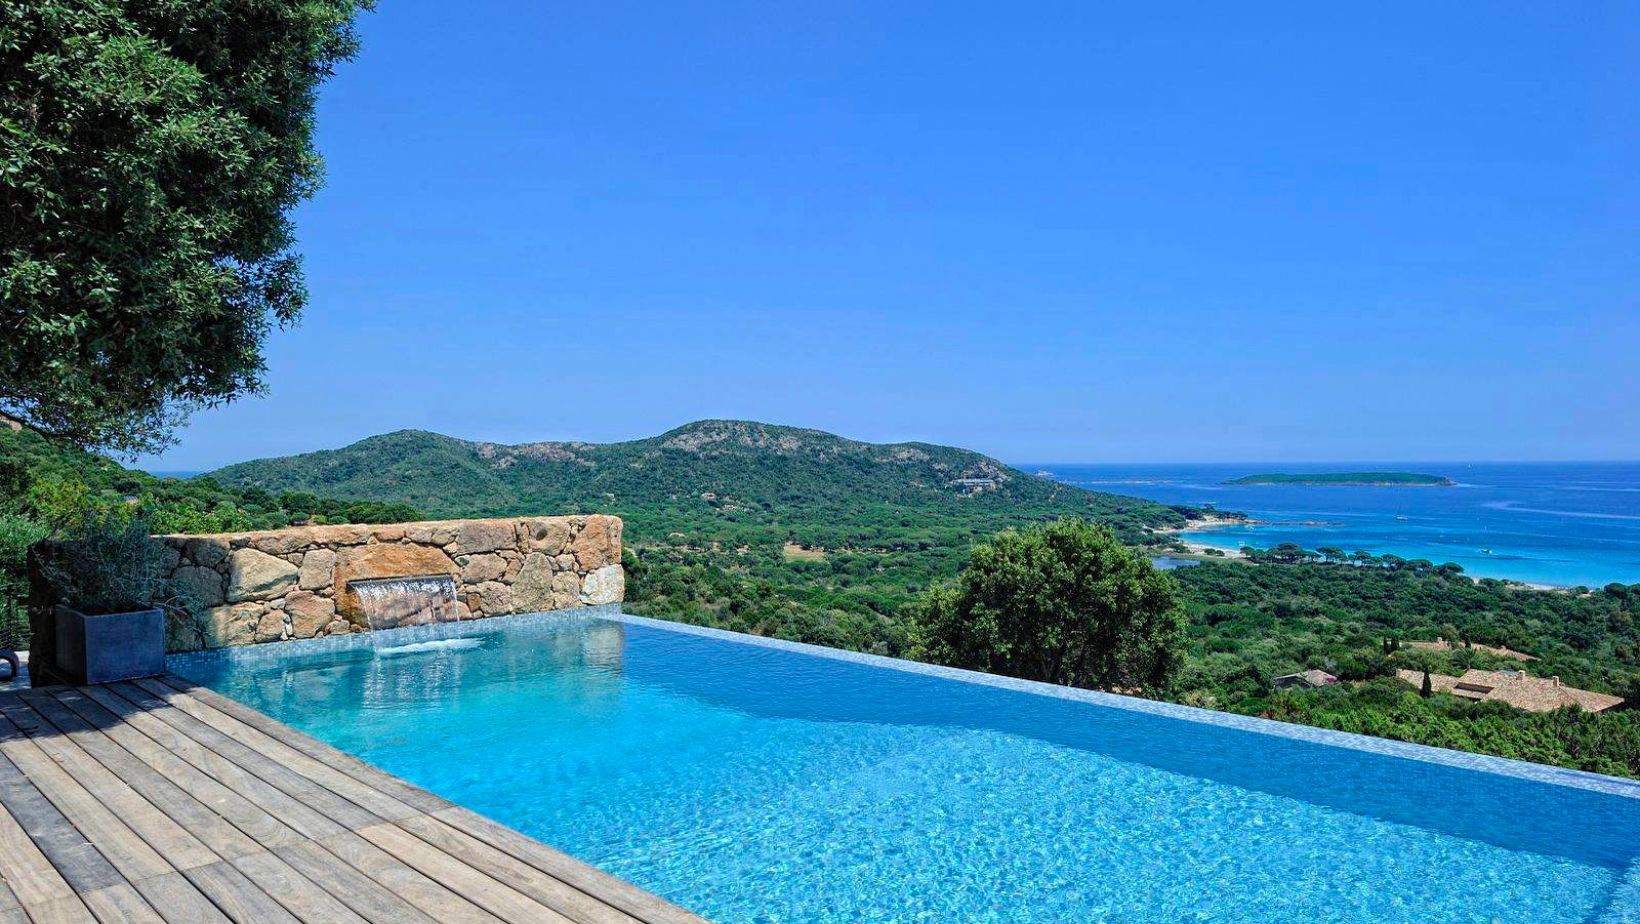 En Corse, une piscine qui déborde c'est plus qu'une piscine, c'est un spectacle naturel qui se marie avec la beauté de l'île.